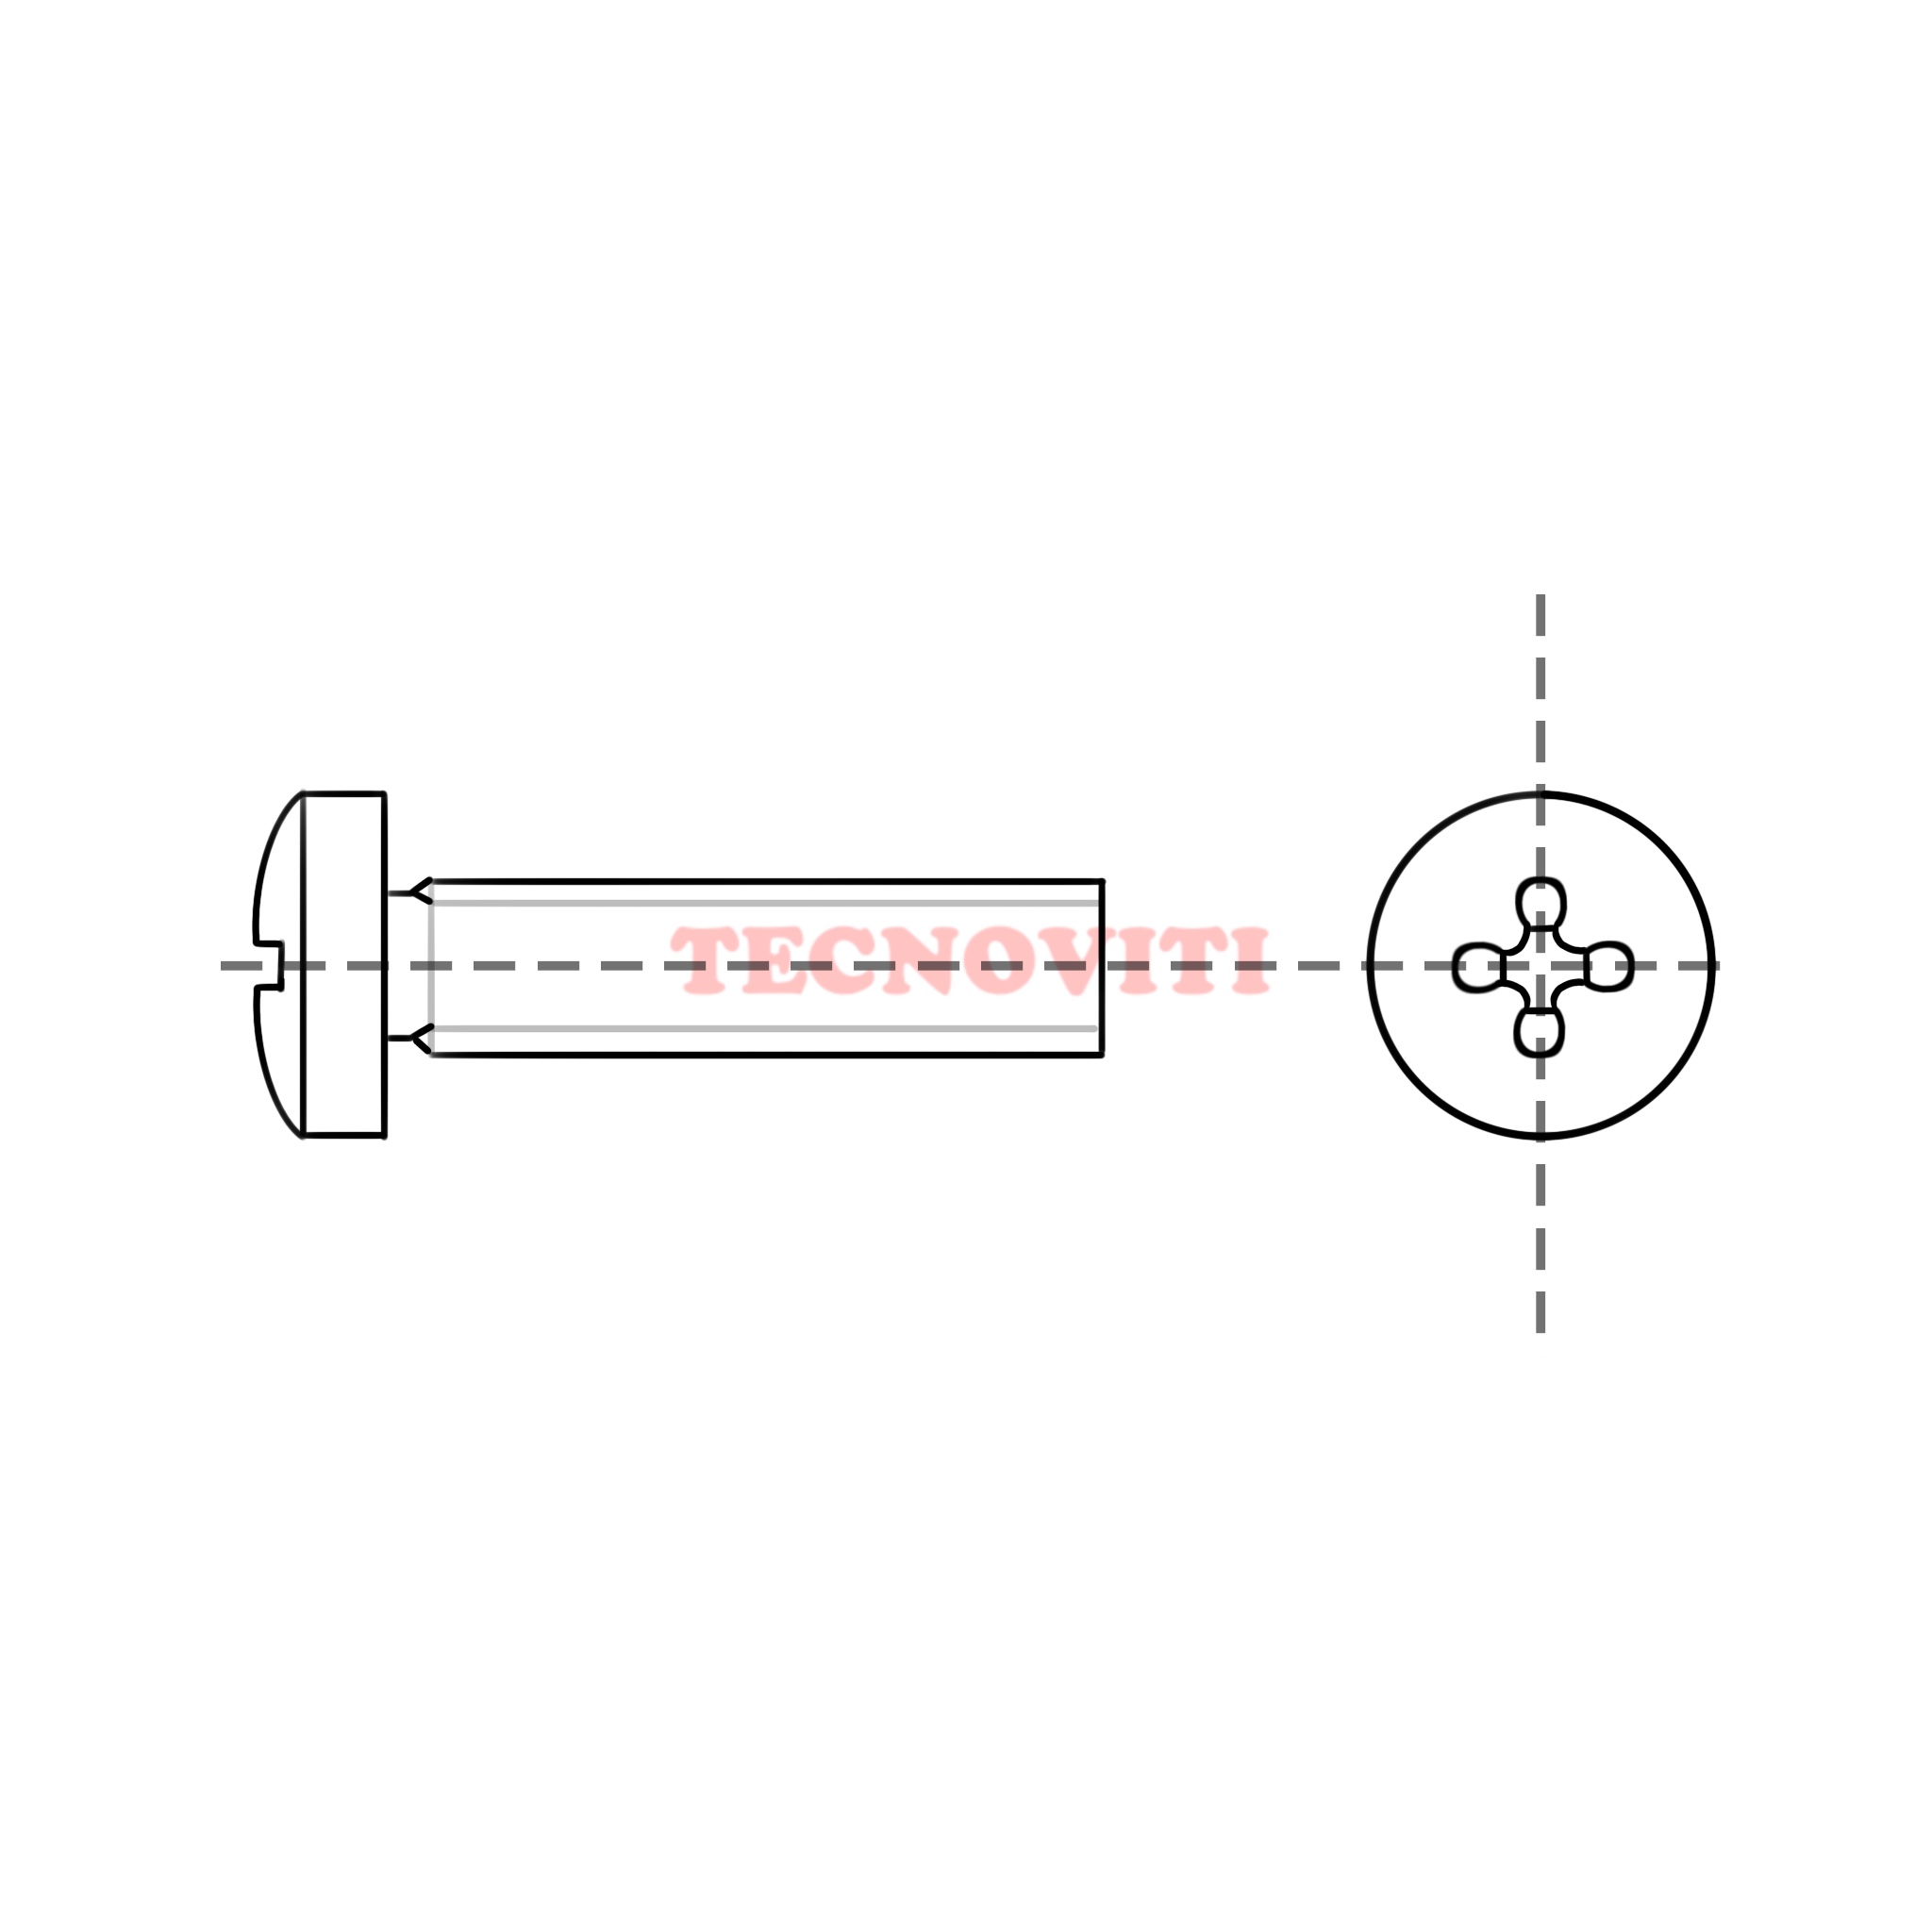 Disegno tecnico Viti con testa cilindrica ed impronta croce (TC+) in pollici, passo fine inglese BSF. TECNOCODE: 7687BSF